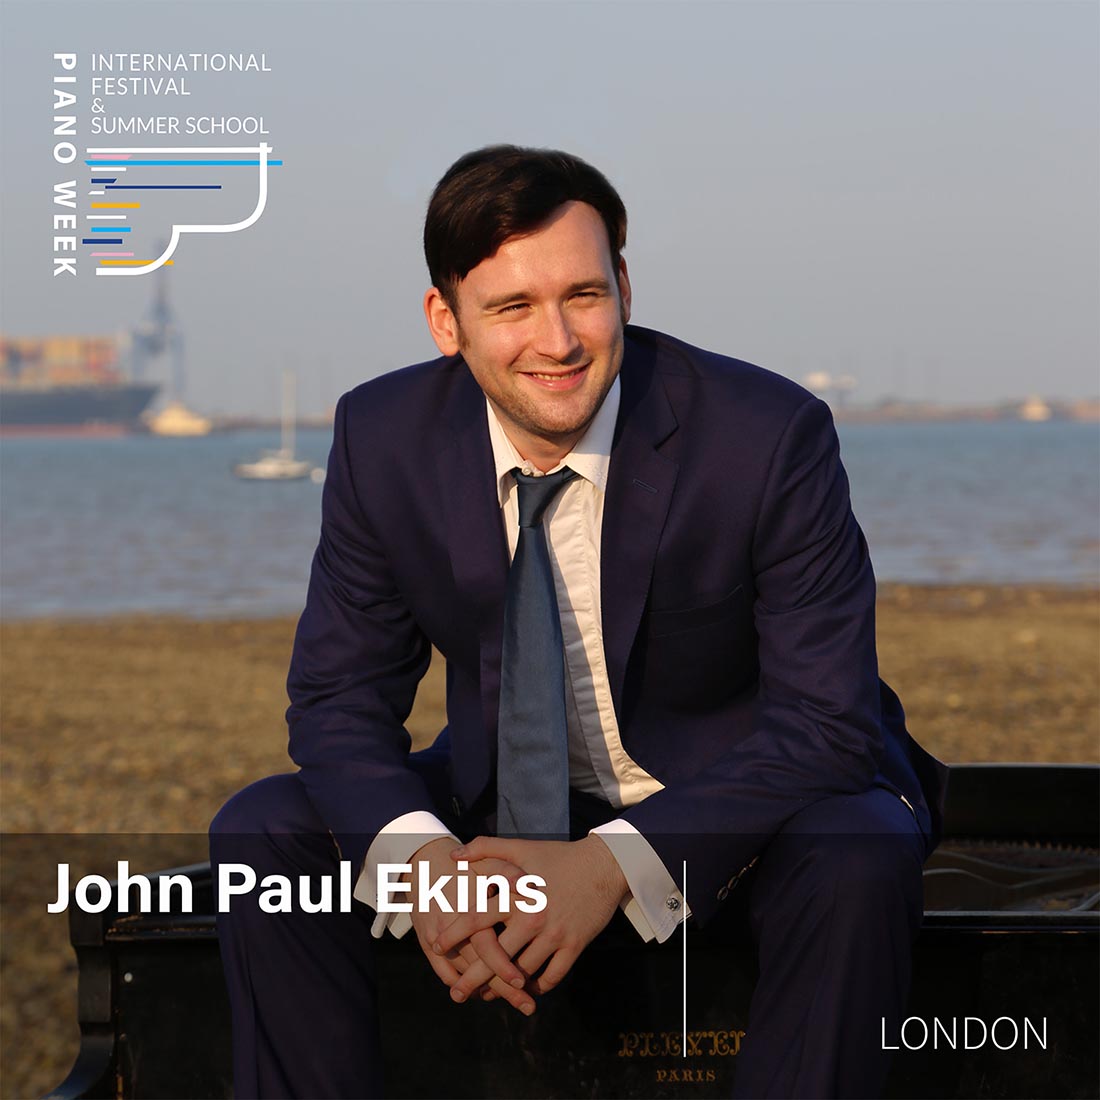 John Paul Ekins